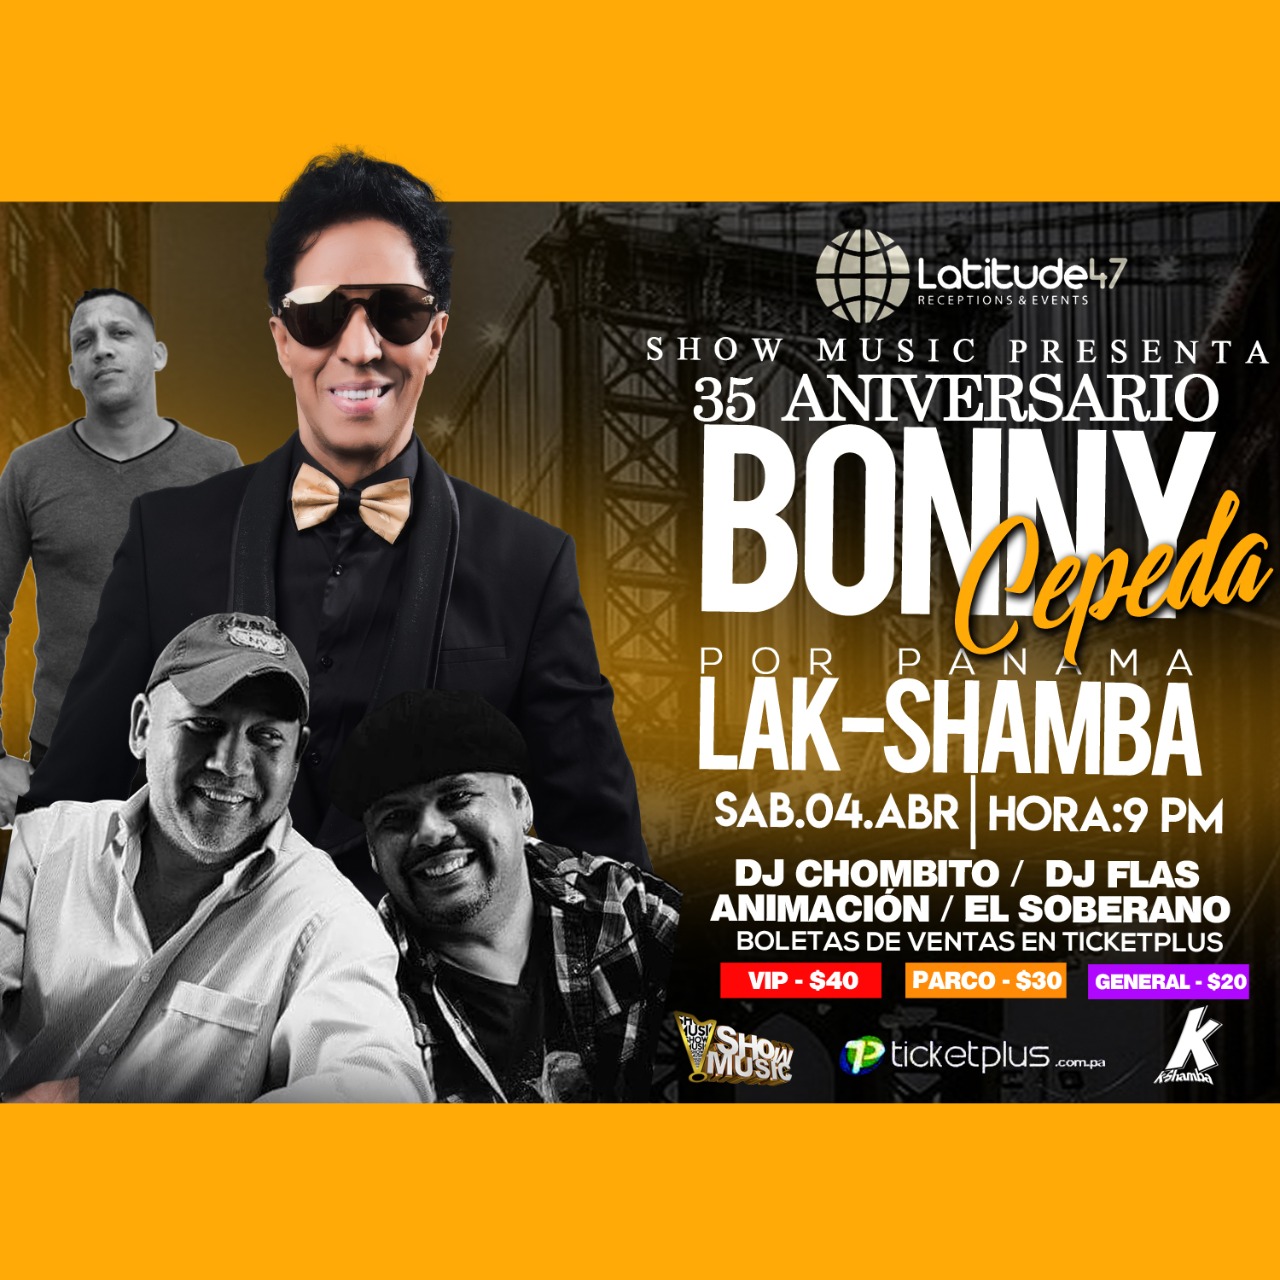 Photo of Bonny Cepeda en concierto en Panamá el próximo 04 de abril